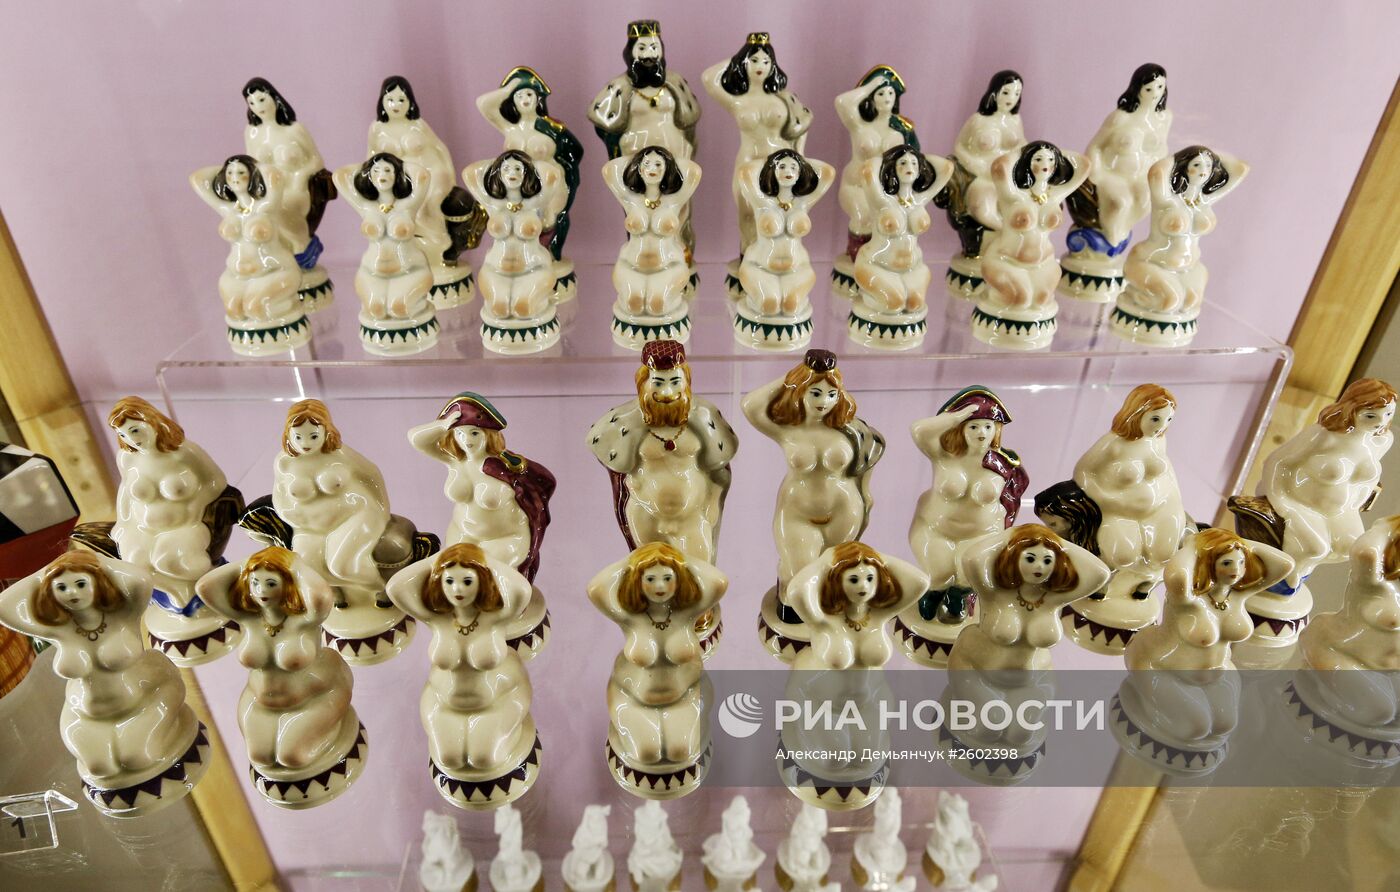 Открытие музея фарфора и шахмат в Санкт-Петербурге